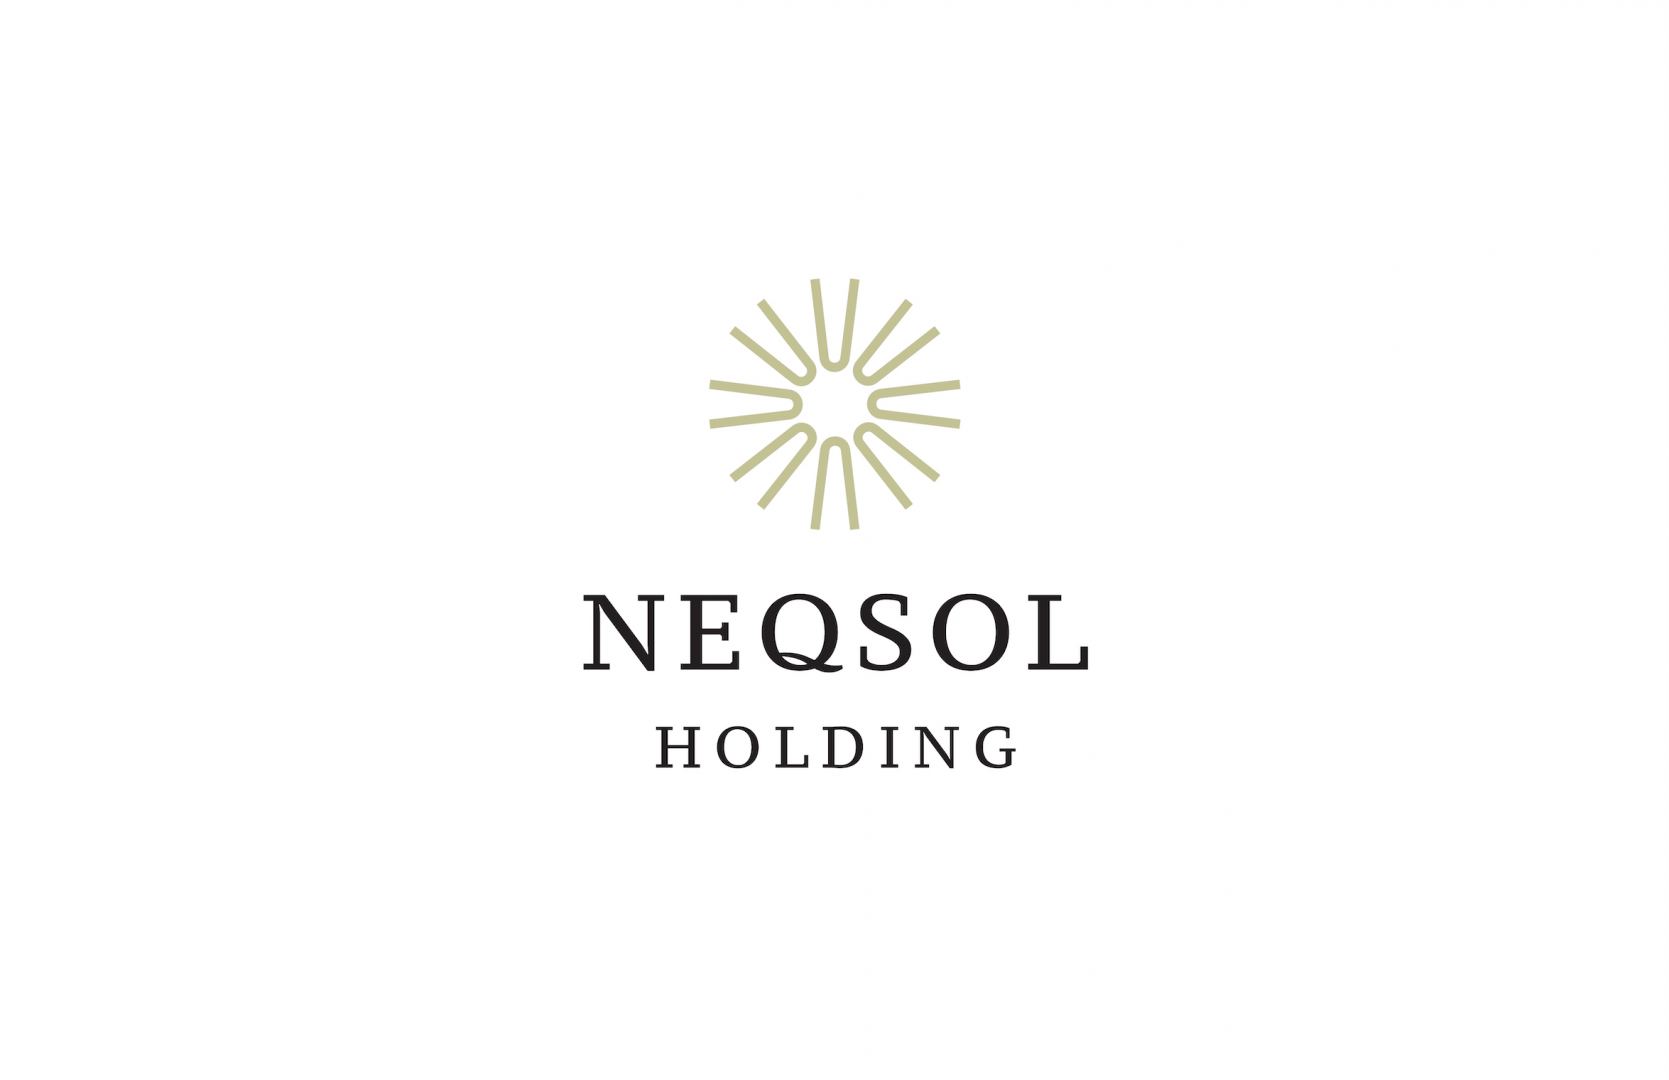 NEQSOL Holding provided humanitarian aid to Türkiye